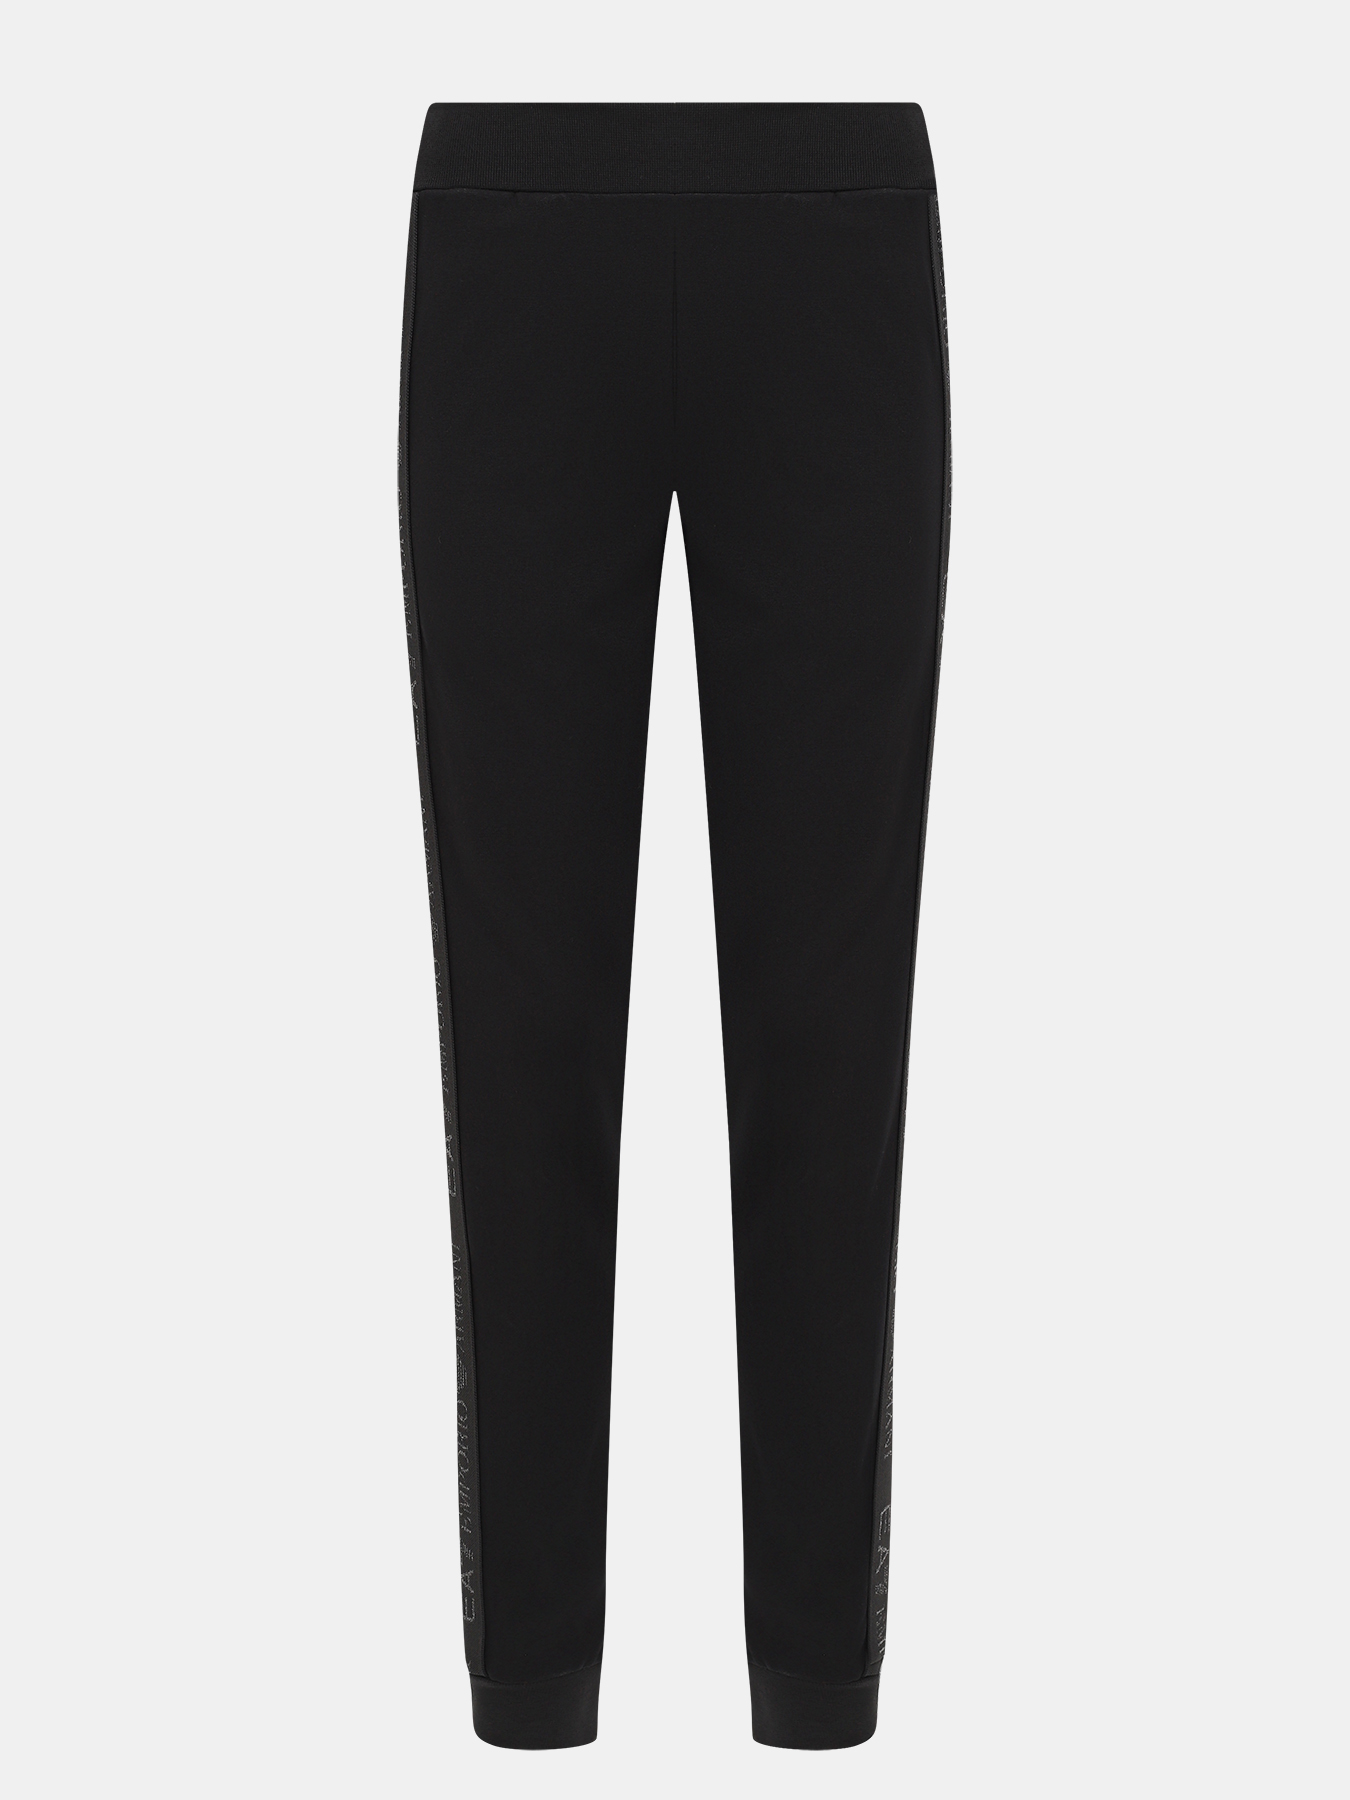 Спортивные брюки EA7 Emporio Armani 423031-041, цвет черный, размер 40-42 - фото 1